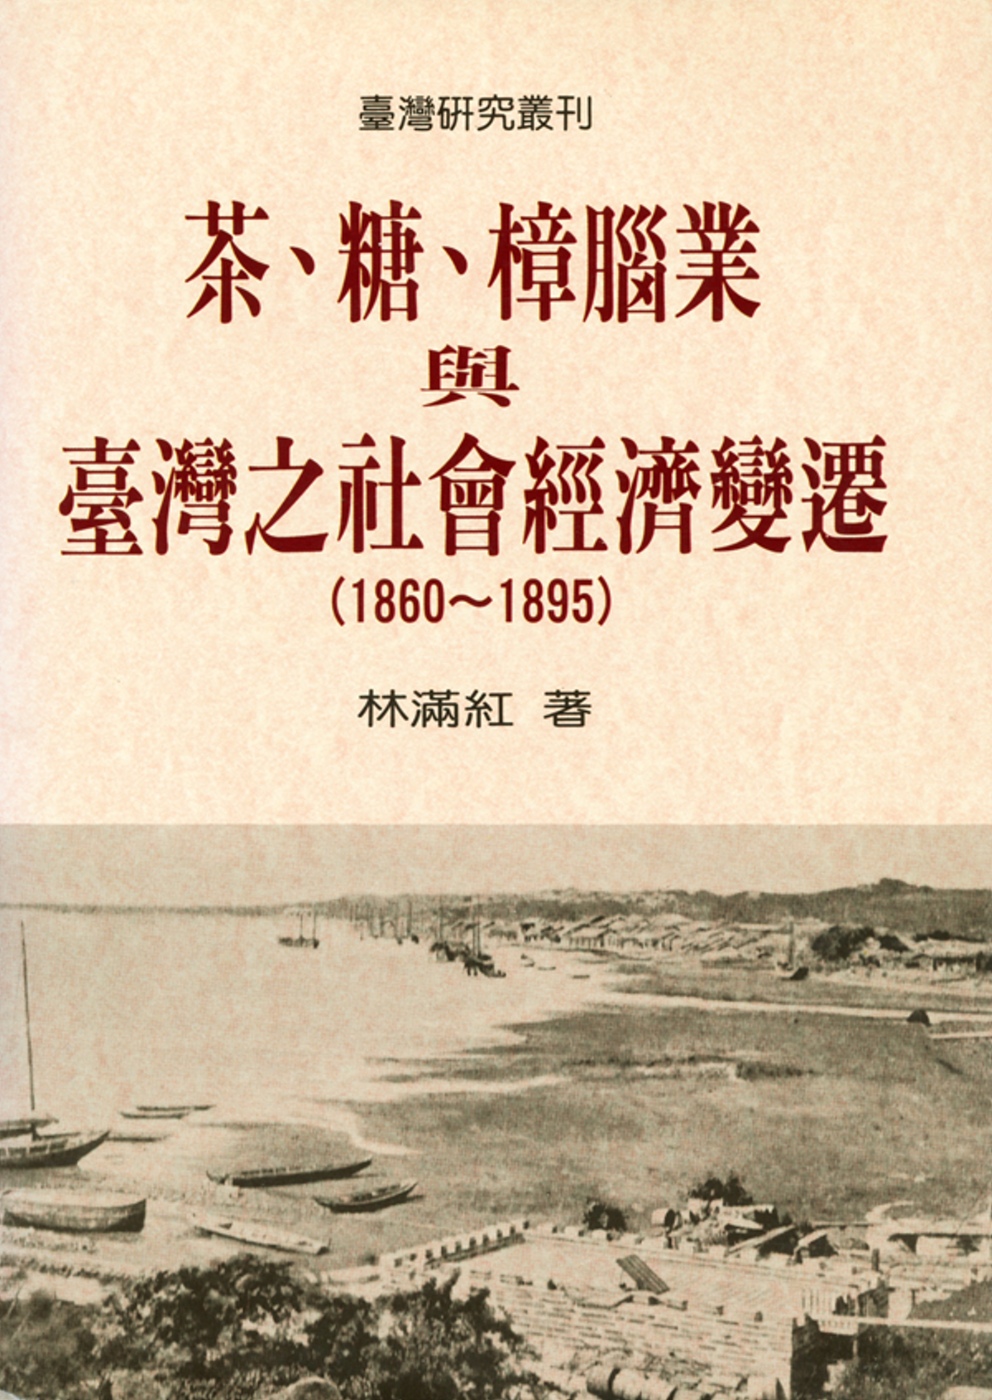 茶、糖、樟腦業與台灣社會經濟變遷(1860-1895)（二版）